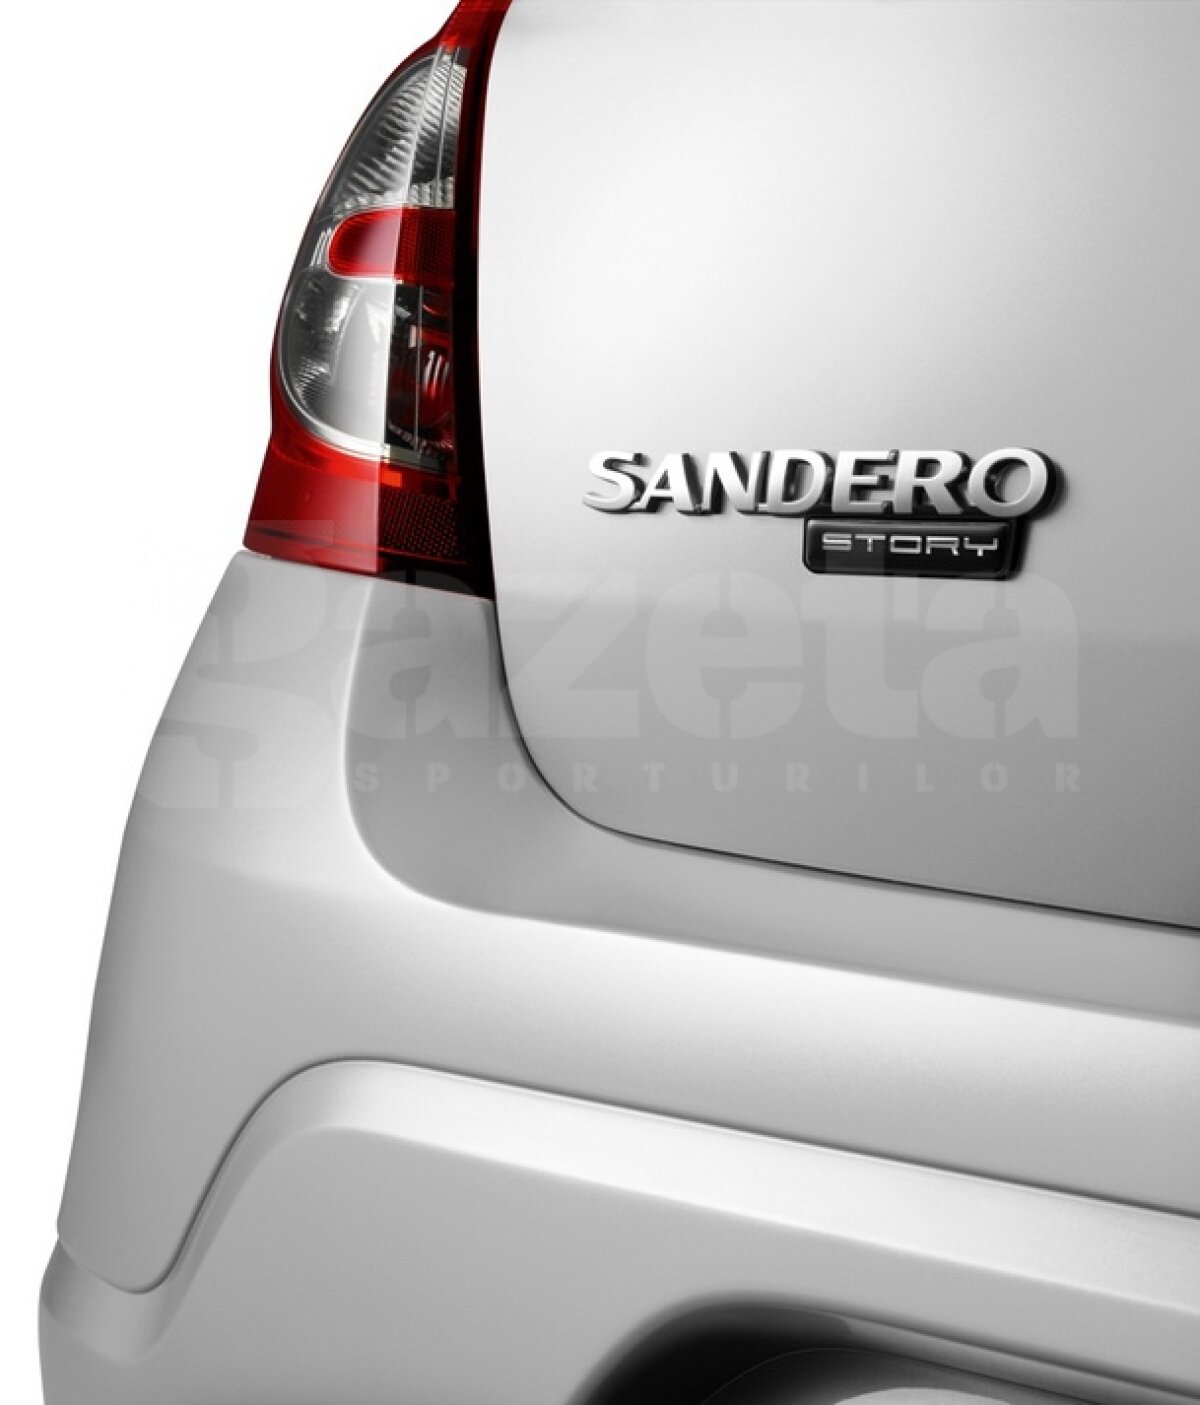 Dacia lansează seria limitată Story pe modelele Sandero şi Logan! 8.800 de euro cel mai ieftin model